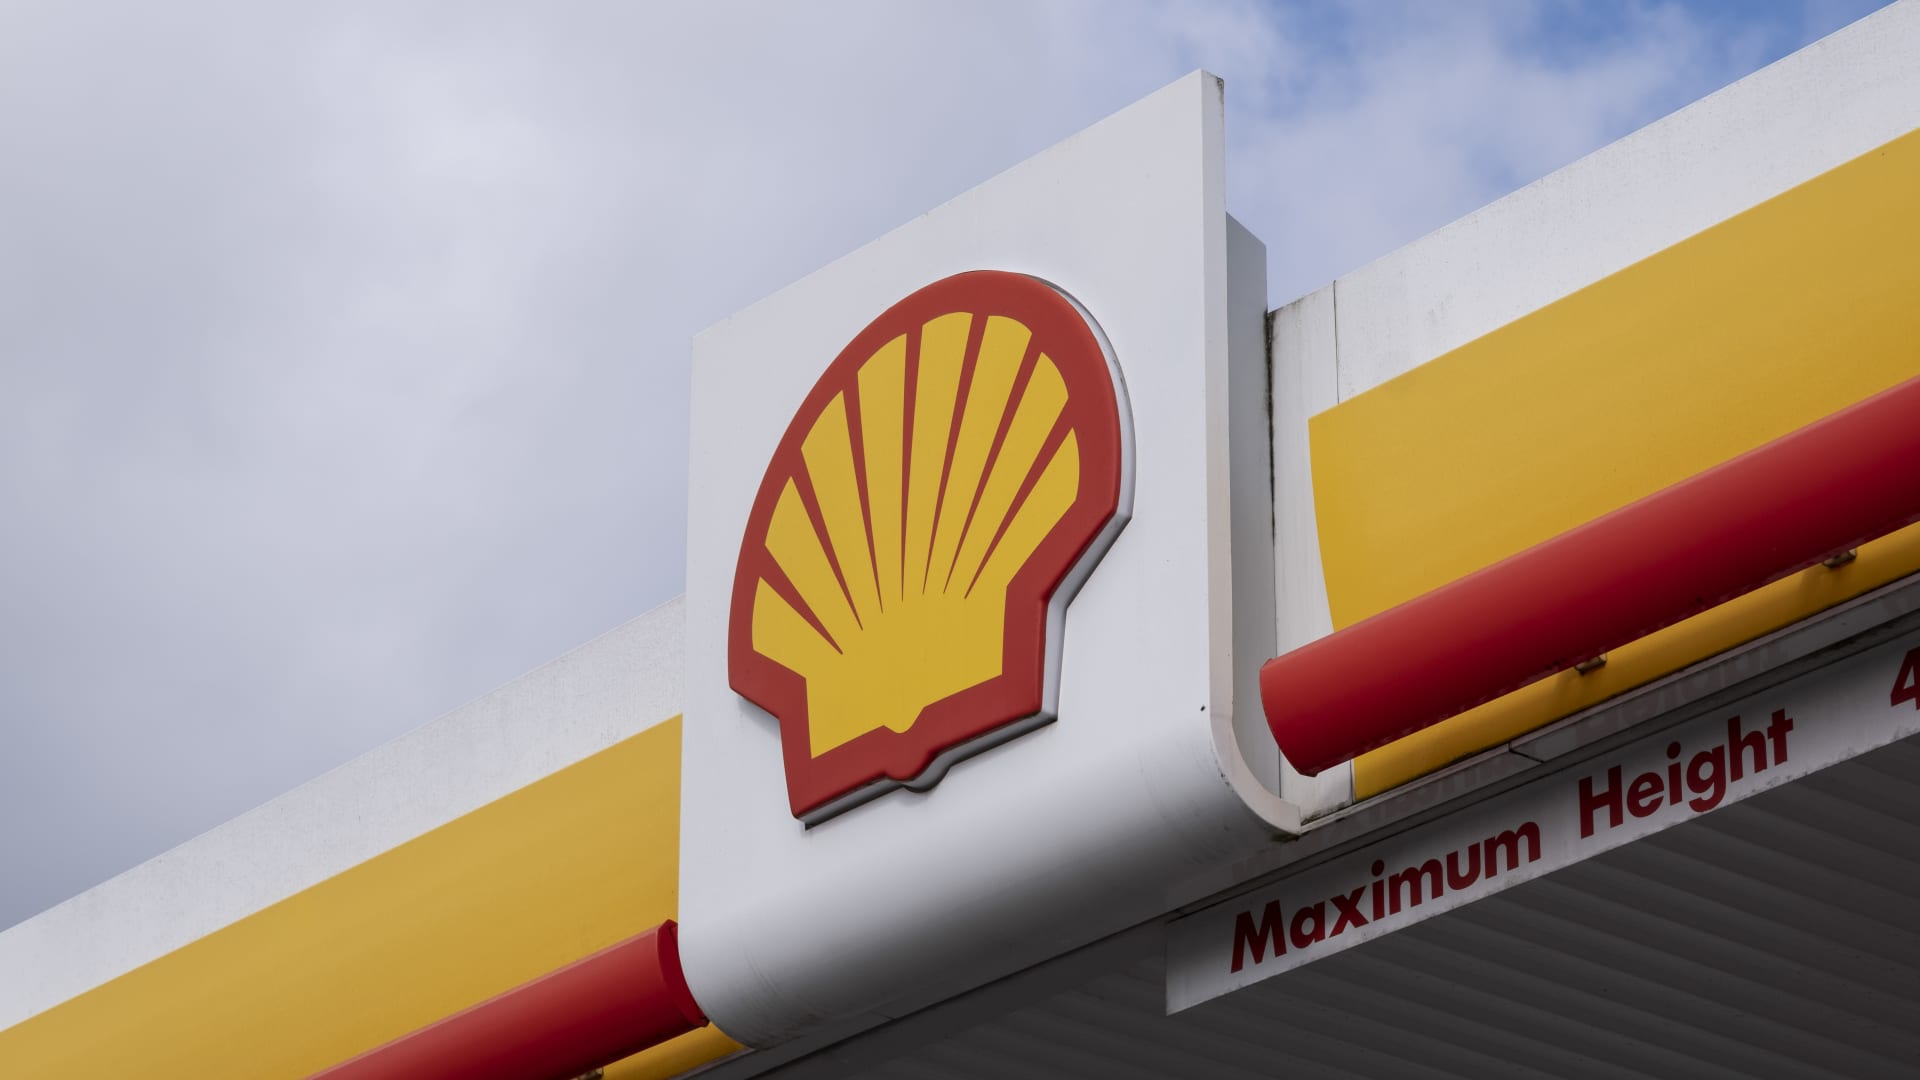 Le géant pétrolier Shell radie jusqu’à 5 milliards de dollars d’actifs après avoir quitté la Russie